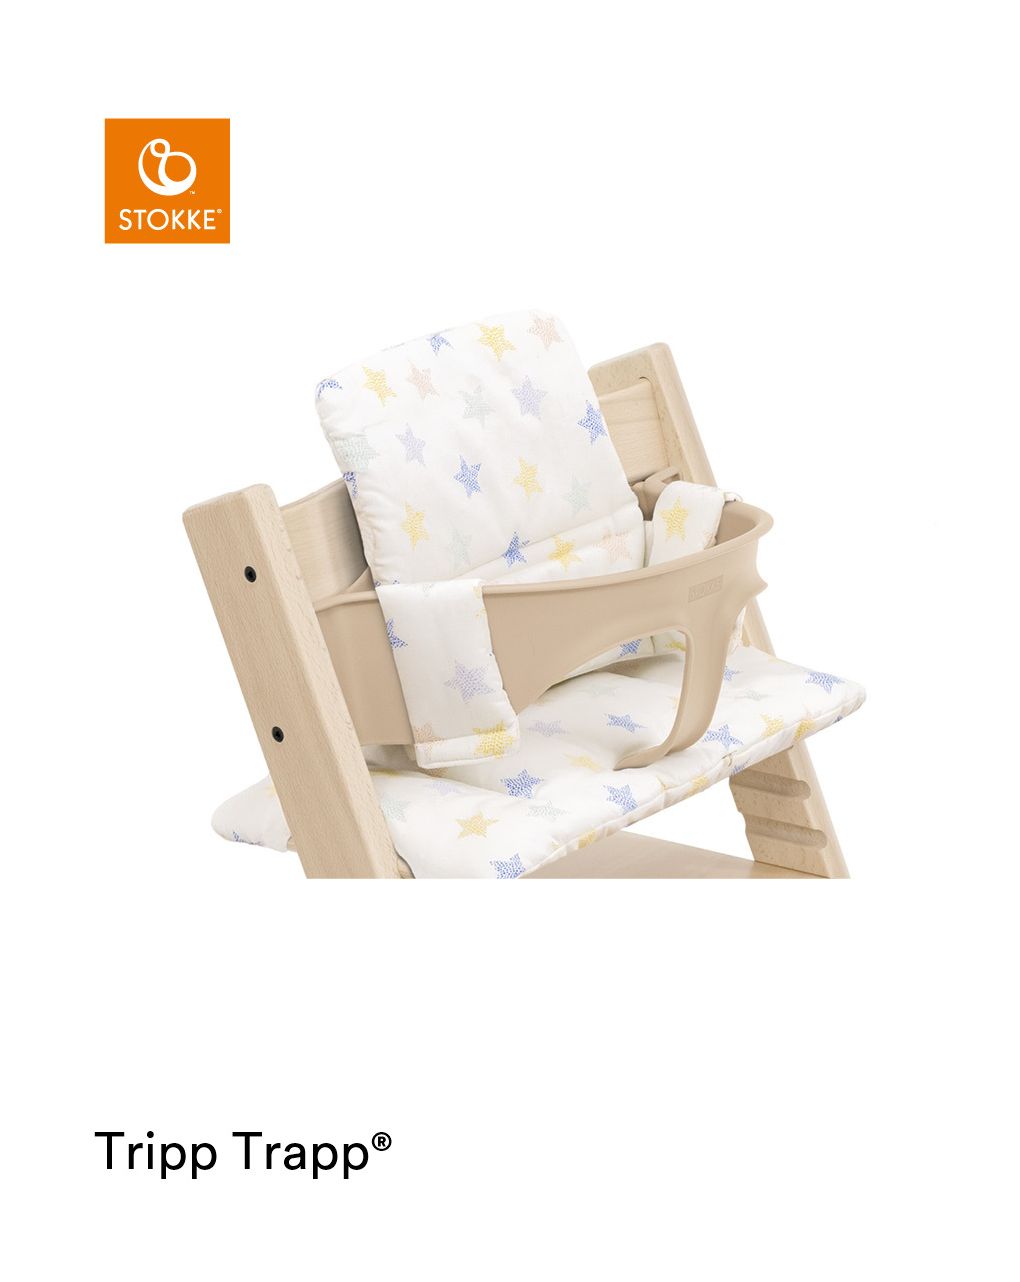 Tripp trapp® classic cushion stars multi ocs
cuscino per seggiolone, morbido e avvolgente per il tuo bambino - Stokke